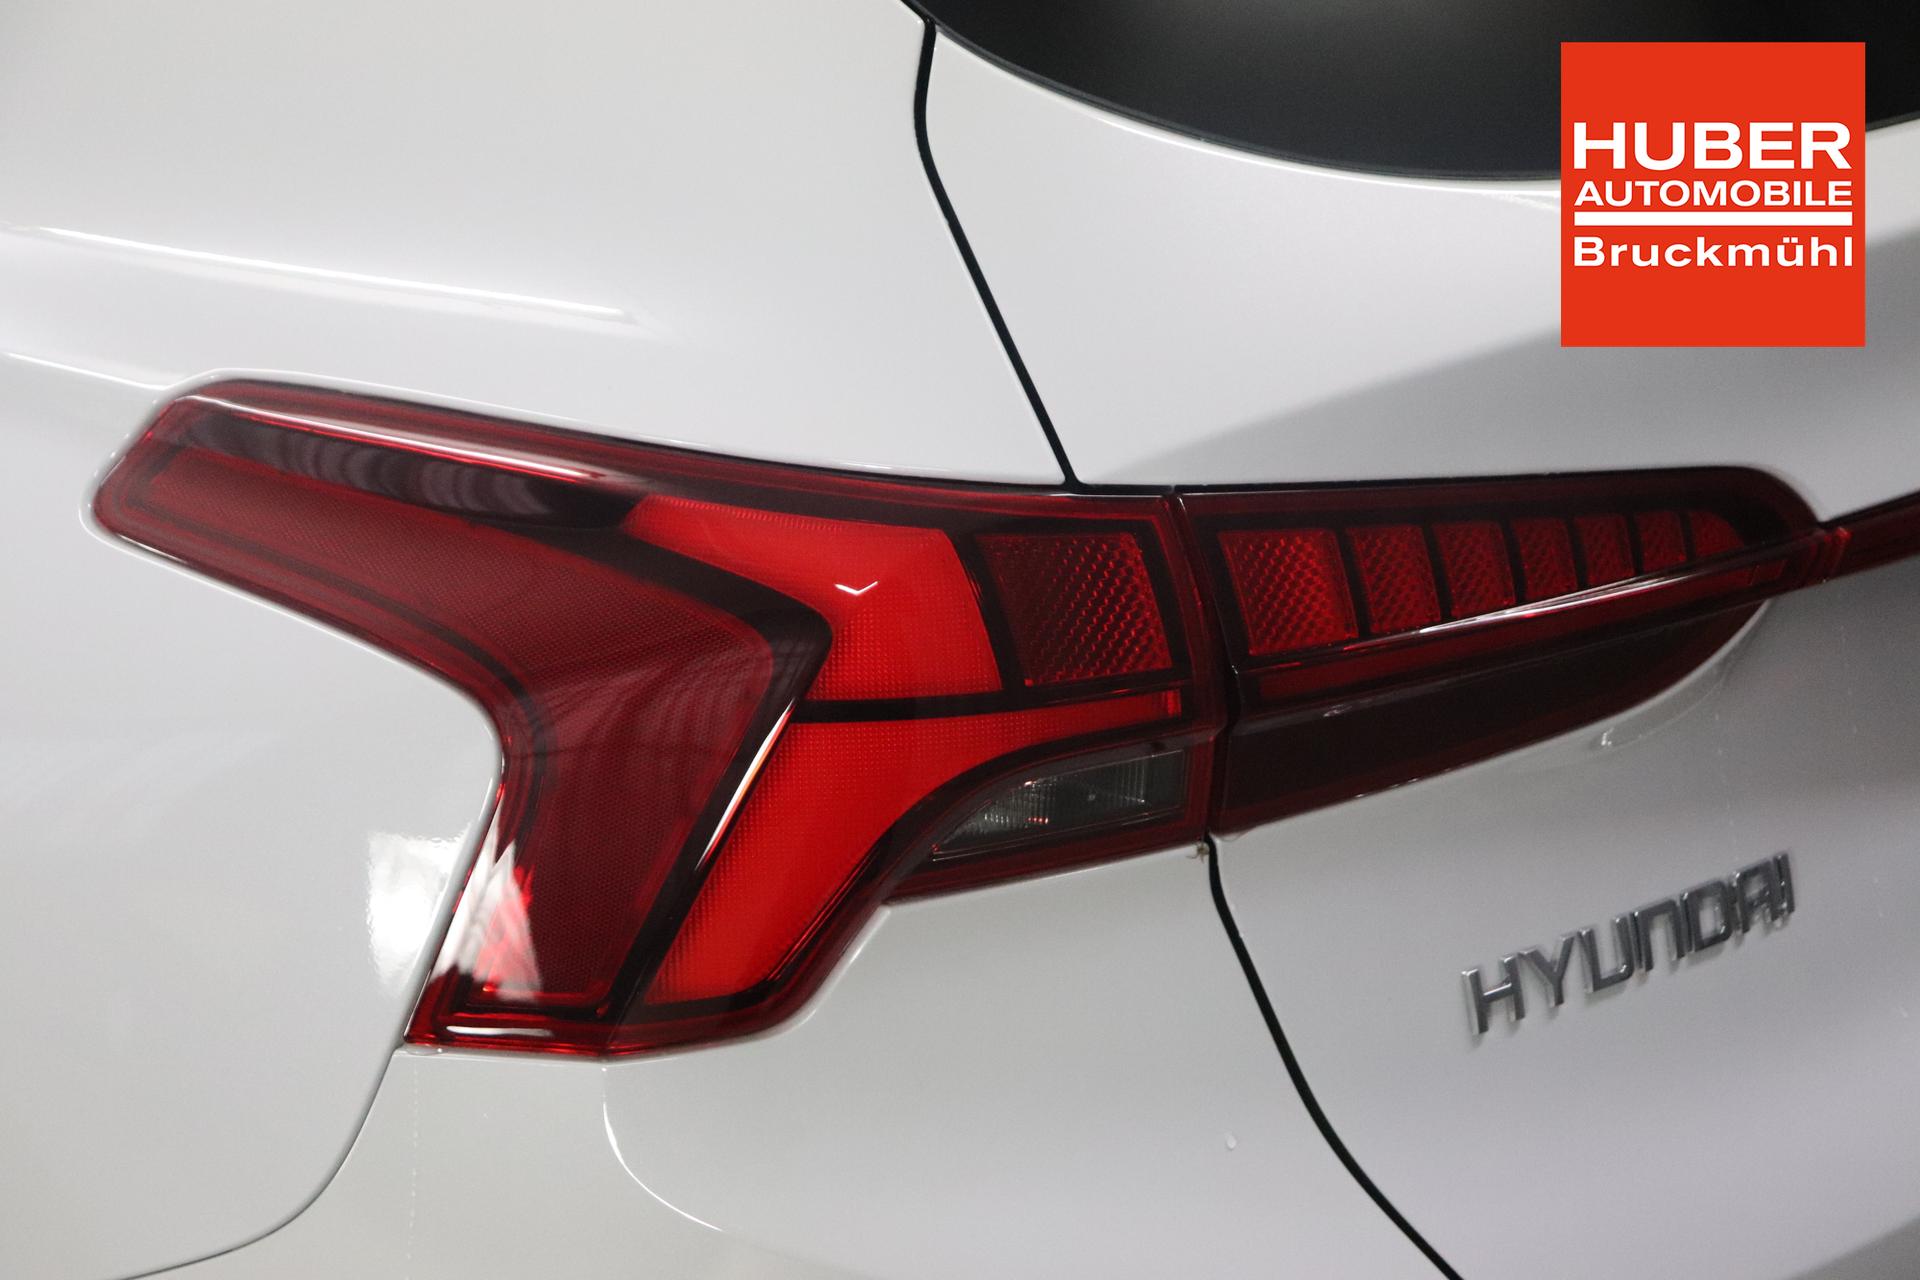 Hyundai SANTA FE Luxury Line 1.6 T-GDi 4WD 195kW Plug-In Hybrid 4x4 ,  Panoramadach, Klimaautomatik, Sitzheizung vorne und hinten, Sitzbelüftung,  Navigationssystem, KRELL-Soundsystem, 360° Kamera, Einparkassistent,  Head-up-Display, Voll-LED-Scheinwerfer